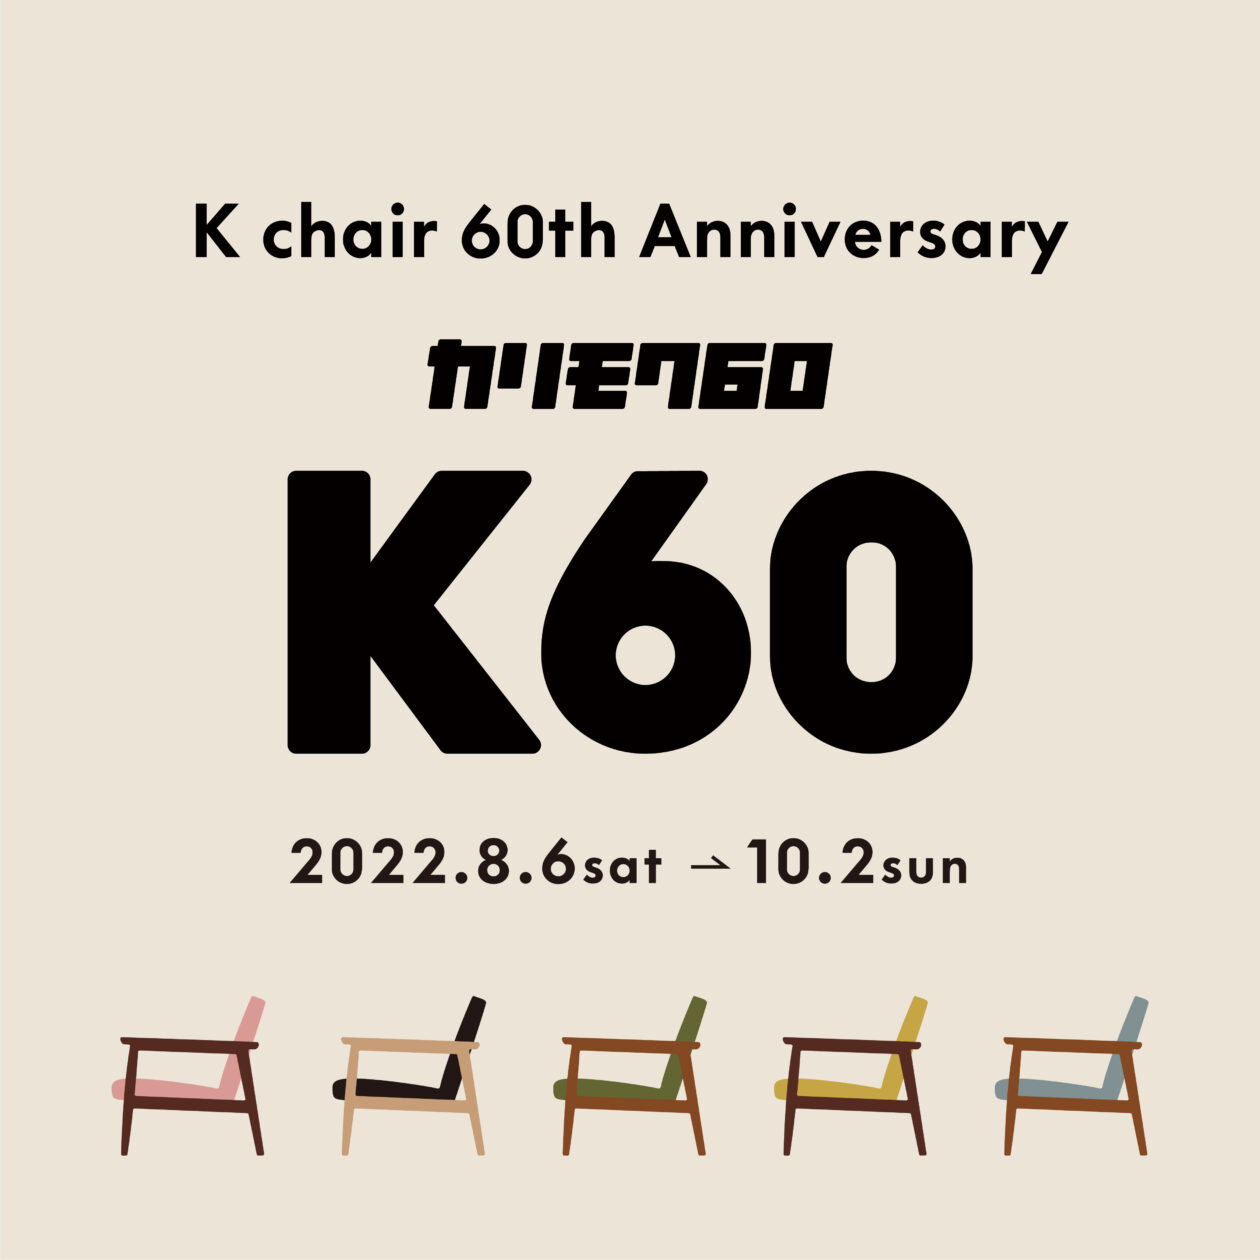 カリモク60 K chair 60th Anniversary